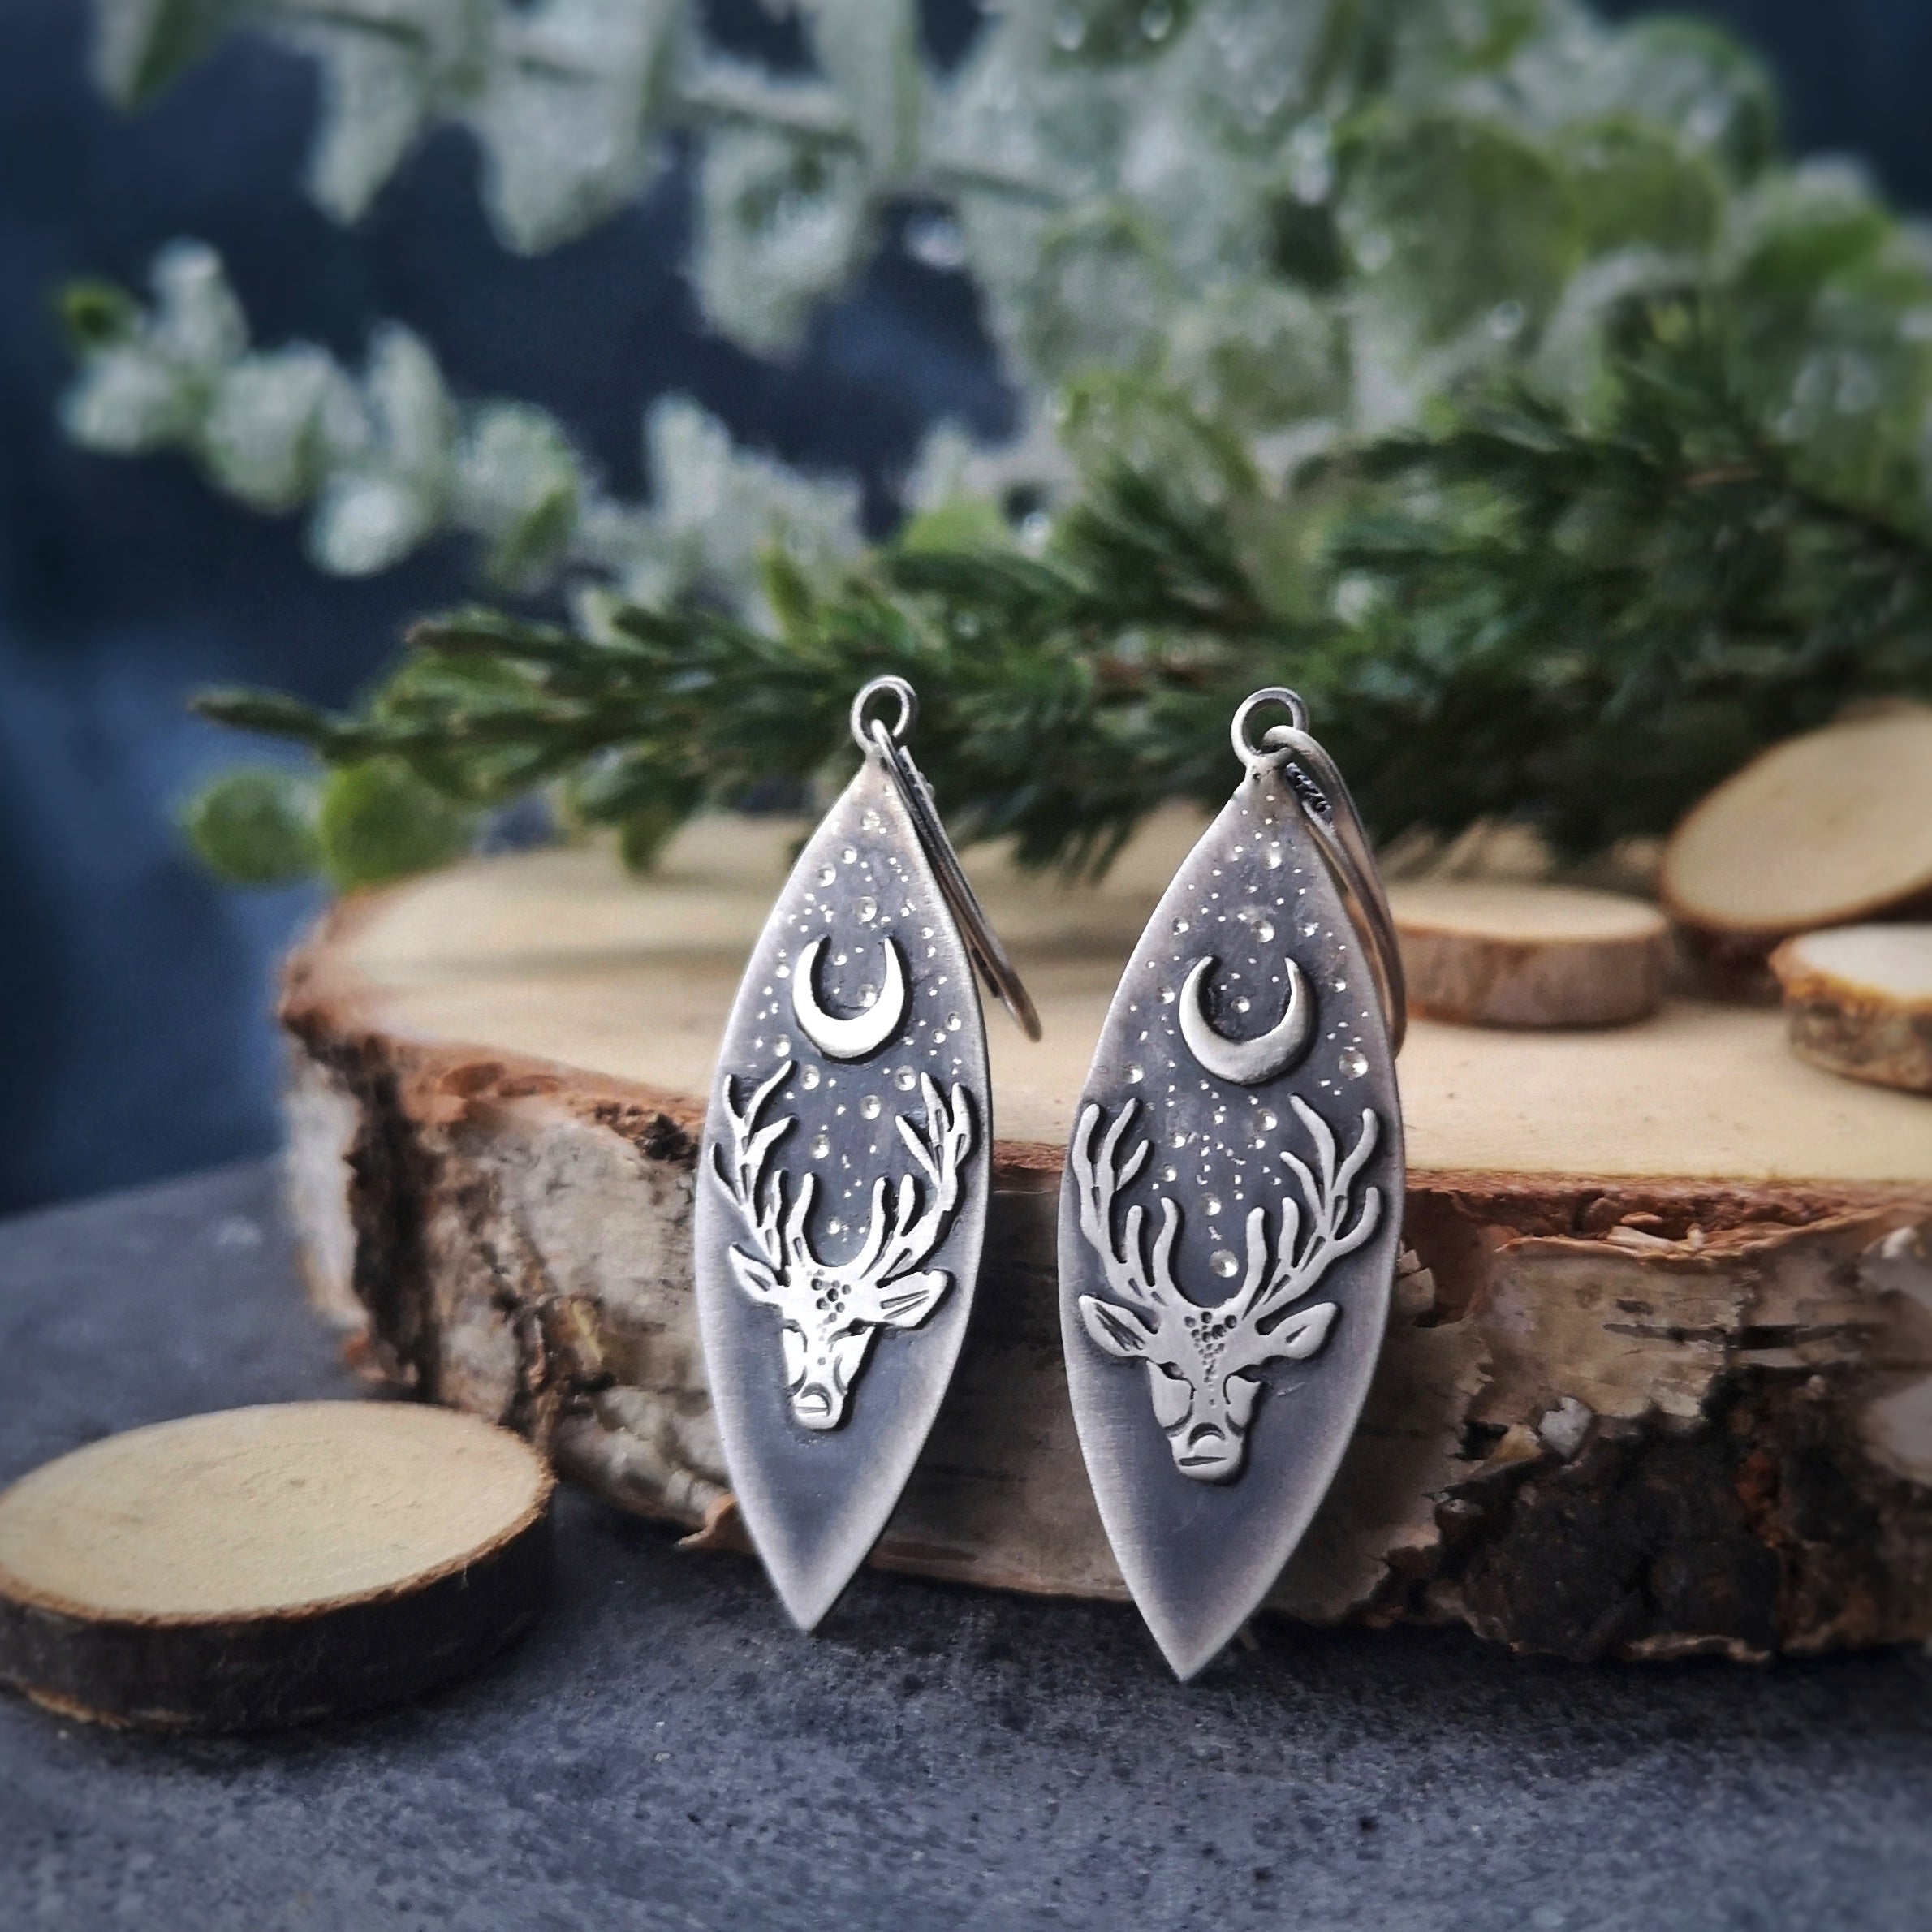 The Tribe Song Earrings - Deer & Moon Earrings